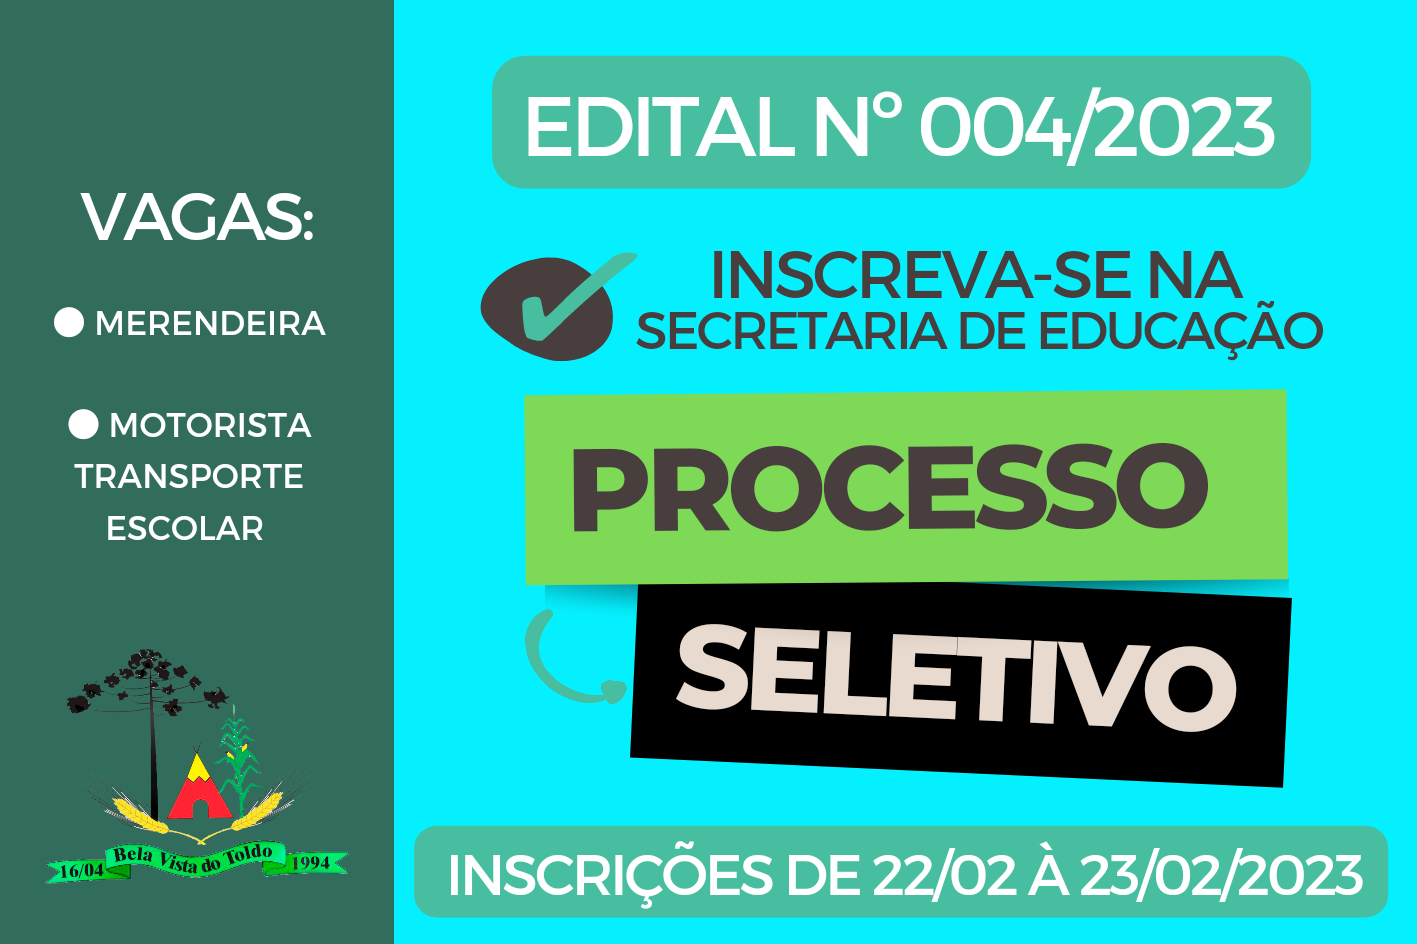 EDITAL Nº 004/2023 DE 27 FEV 2023 PROCESSO SELETIVO NA EDUCAÇÃO